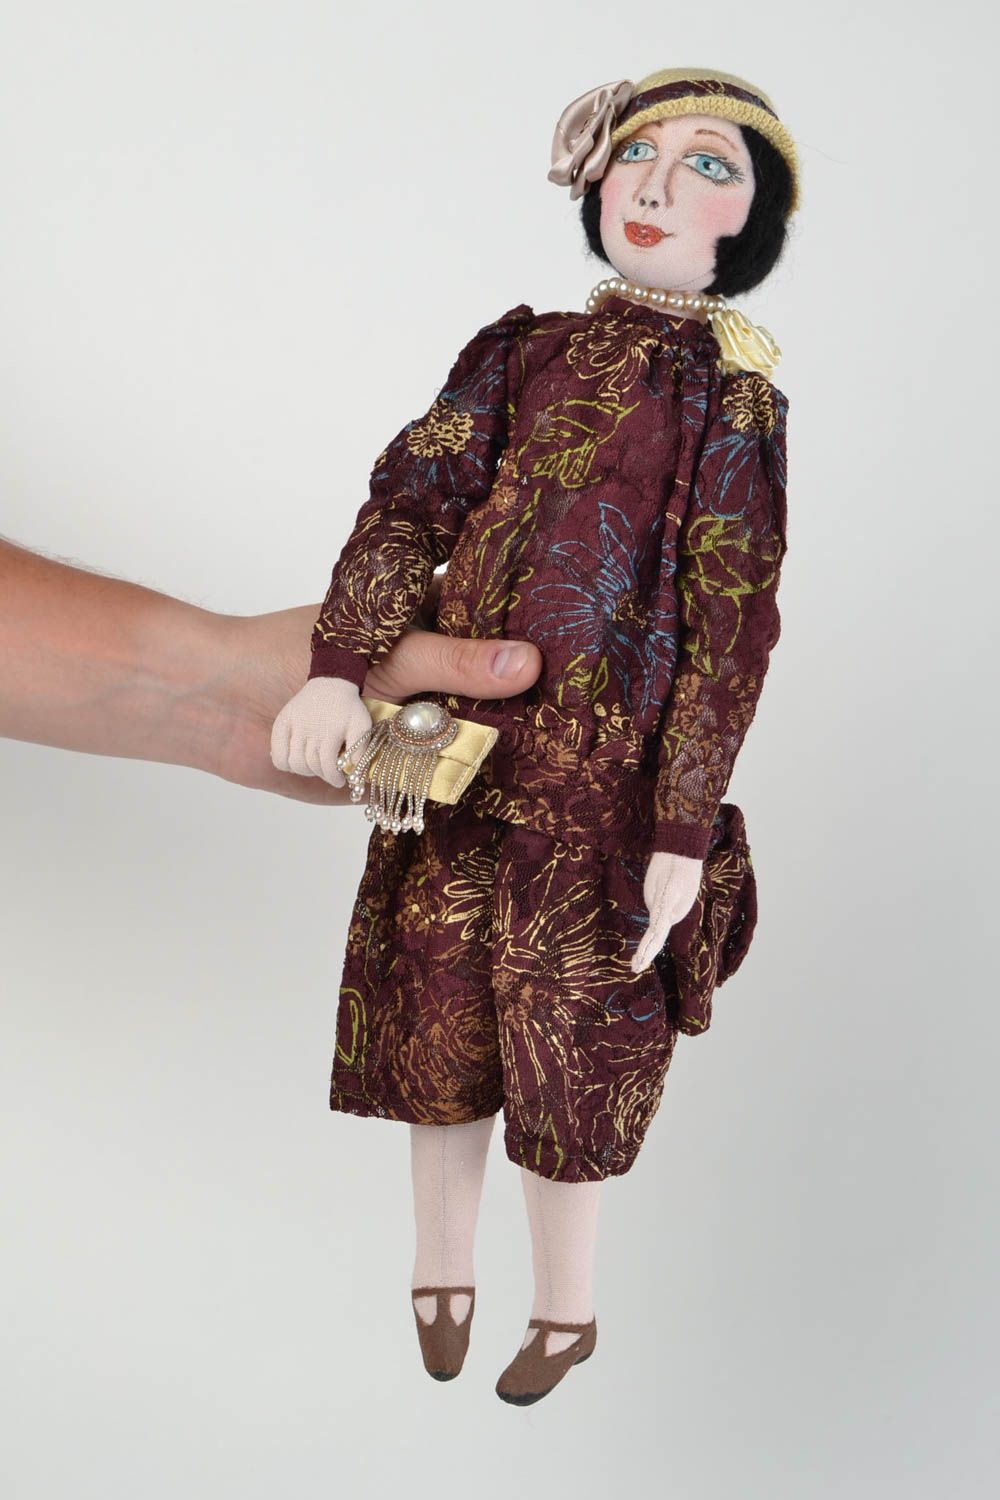 Кукла для интерьера и детей тканевая мягкая игрушка ручной работы Анна фото 2